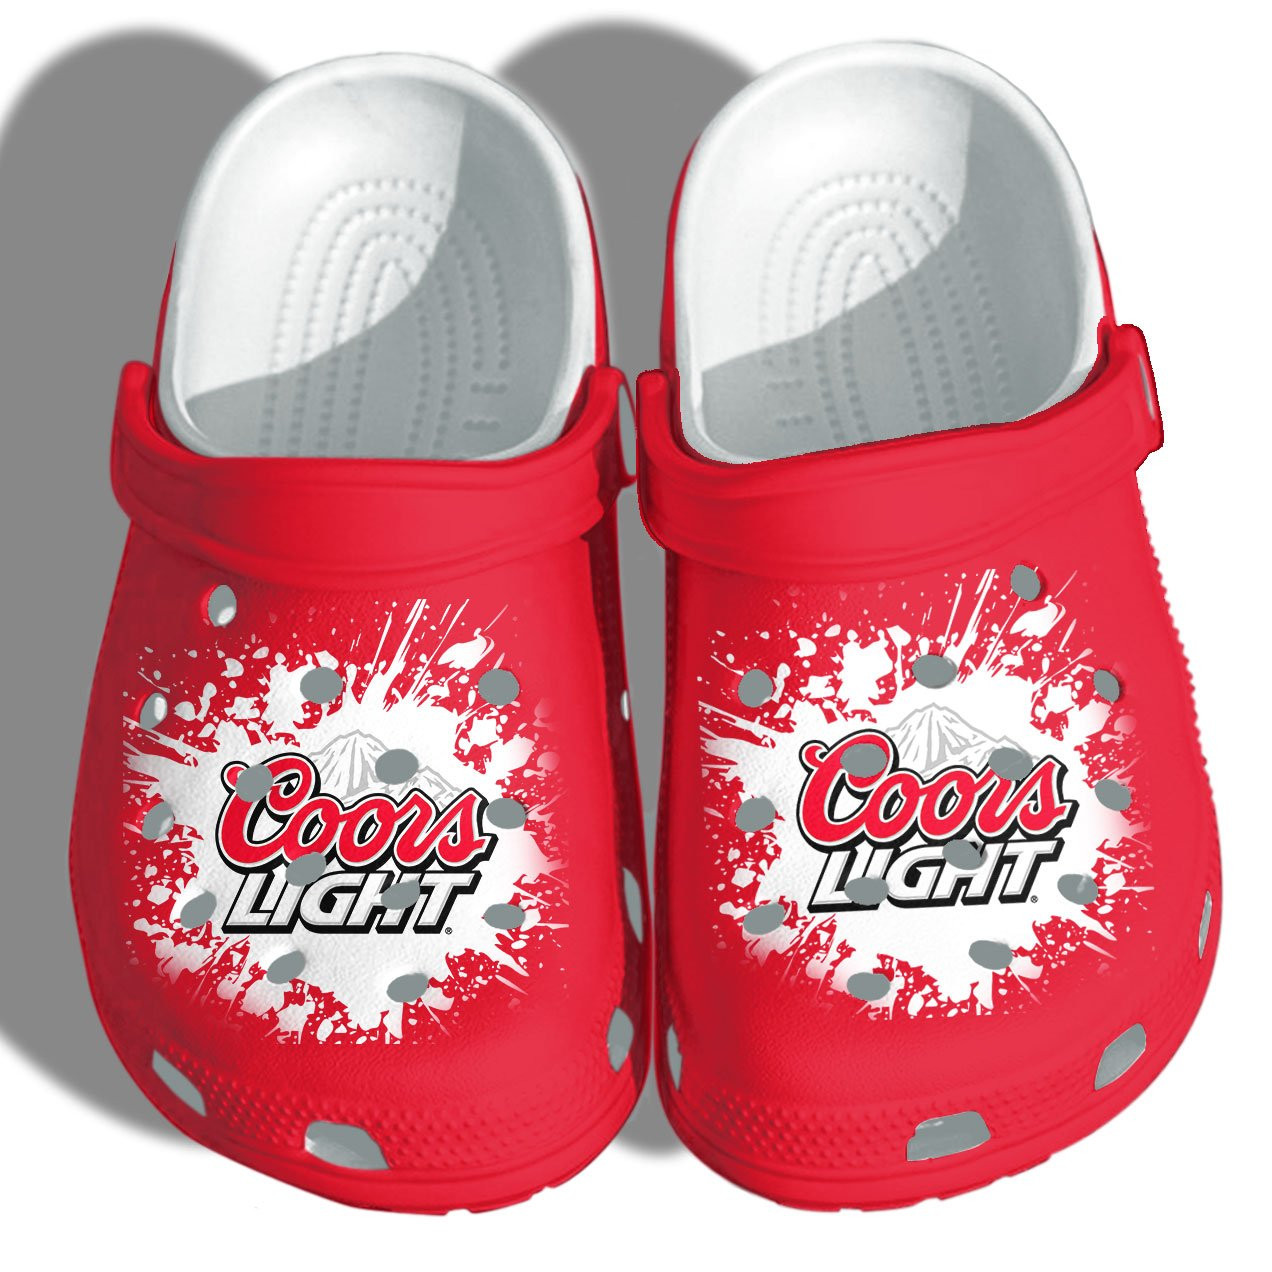 Coors Light Beer Lover Crocs Crocband Clog Shoes For Men Women